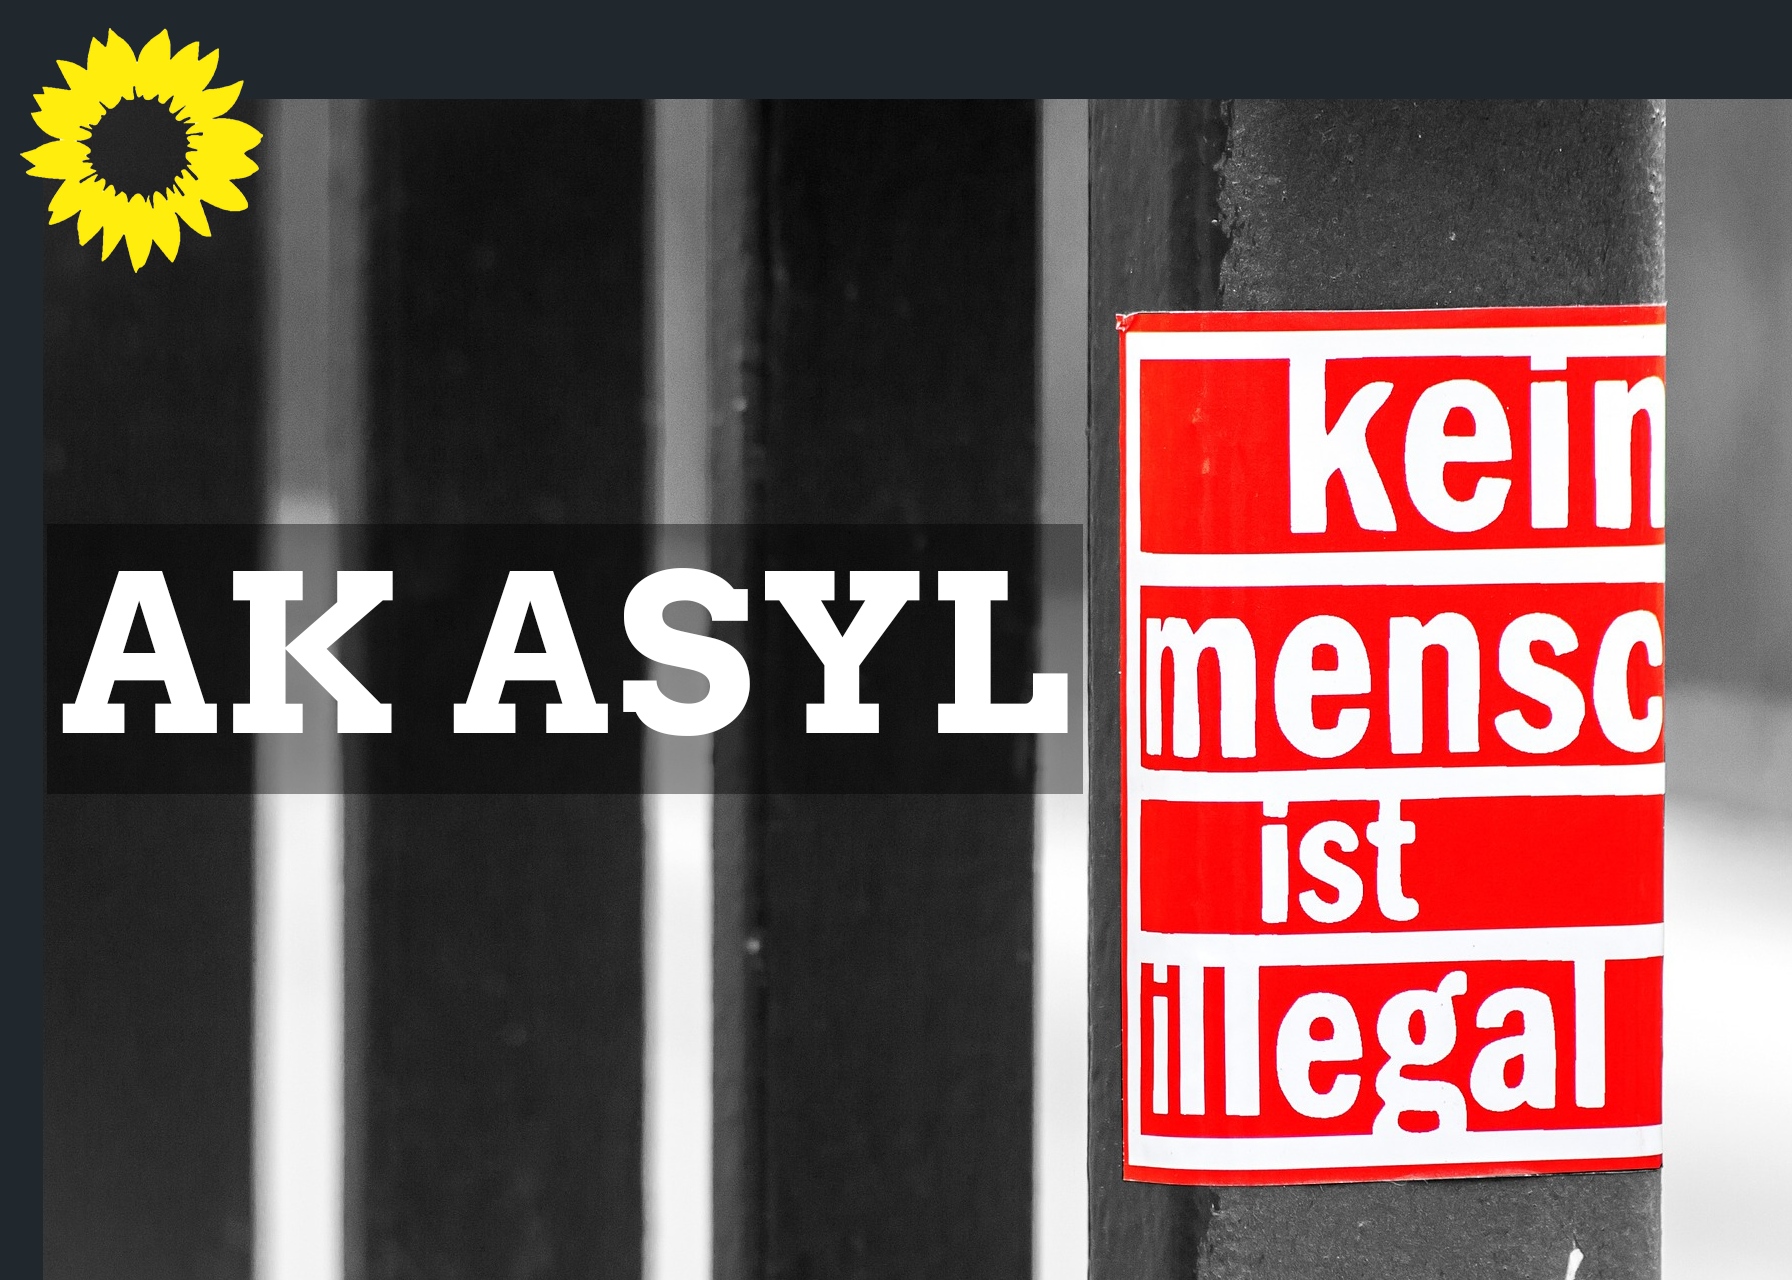 AK Asyl, im Hintergrund sind Metallstäbe einer Gefängniszelle zu sehen, im Vordergrund die Aufschrift "kein Mensch ist illegal" in rot-weißer Schrift, links oben das Logo von Bündnis 90 / Die Grünen, der Kranz einer gelben Sonnenblume